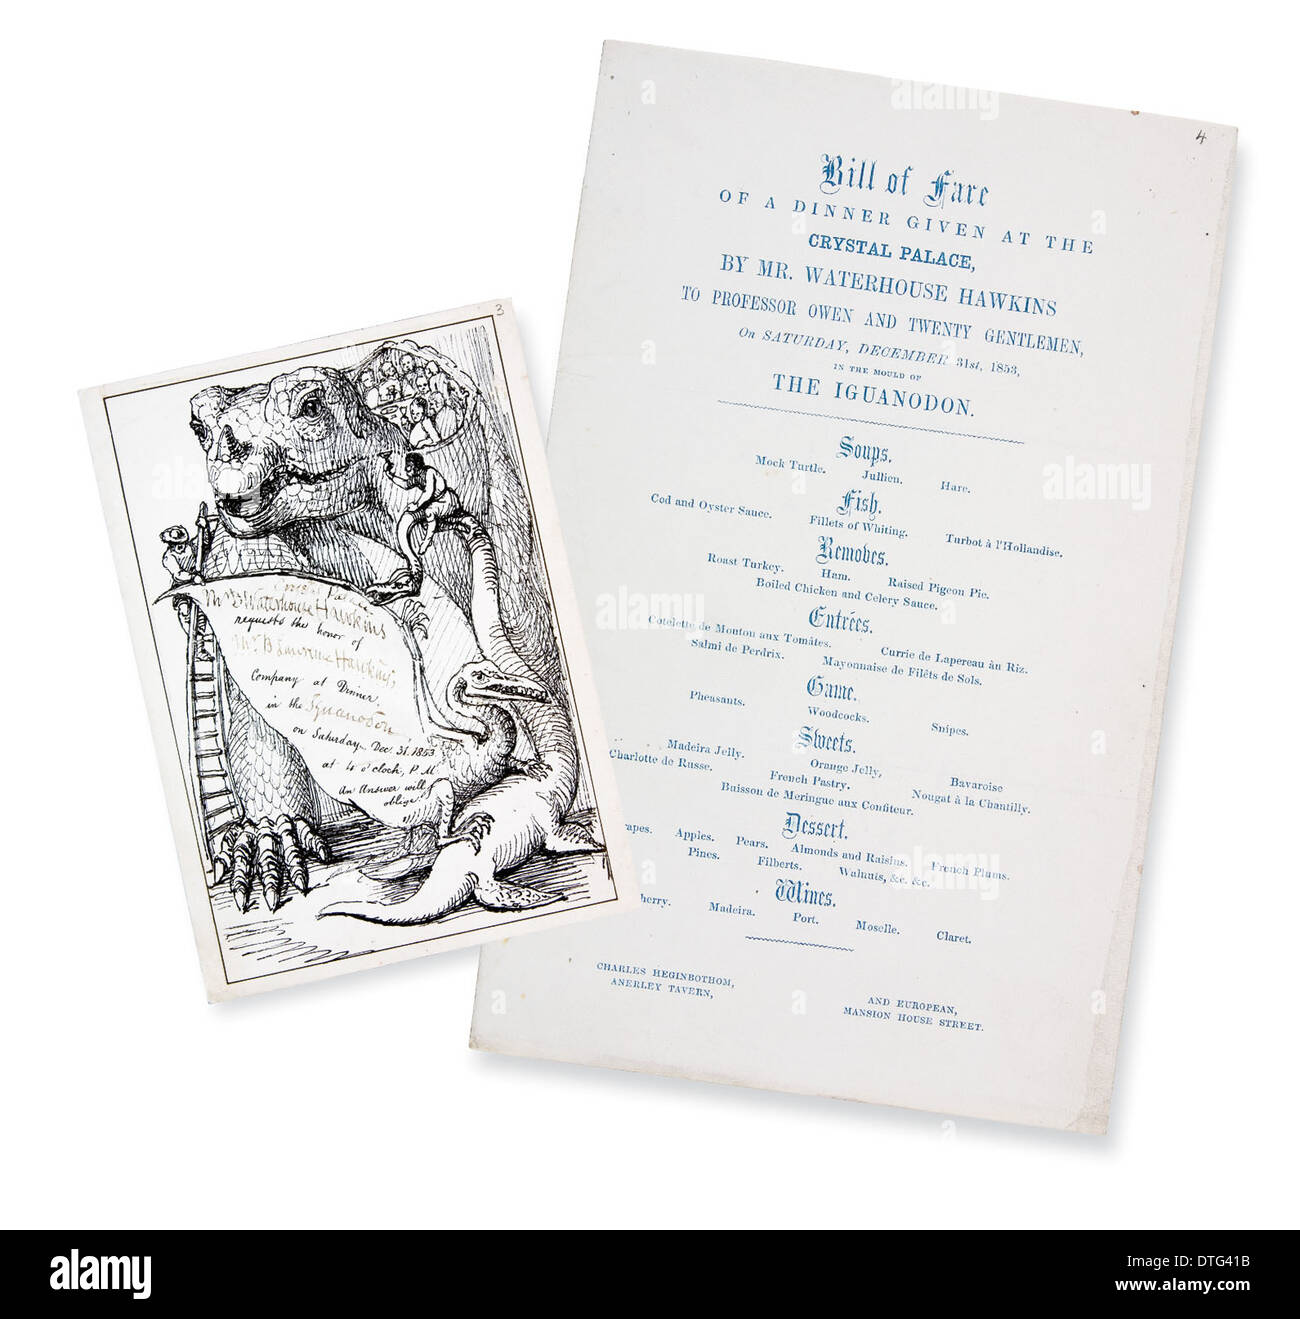 Invito in stile vittoriano e menu per cena presso il Palazzo di Cristallo (Capodanno 1853) Foto Stock